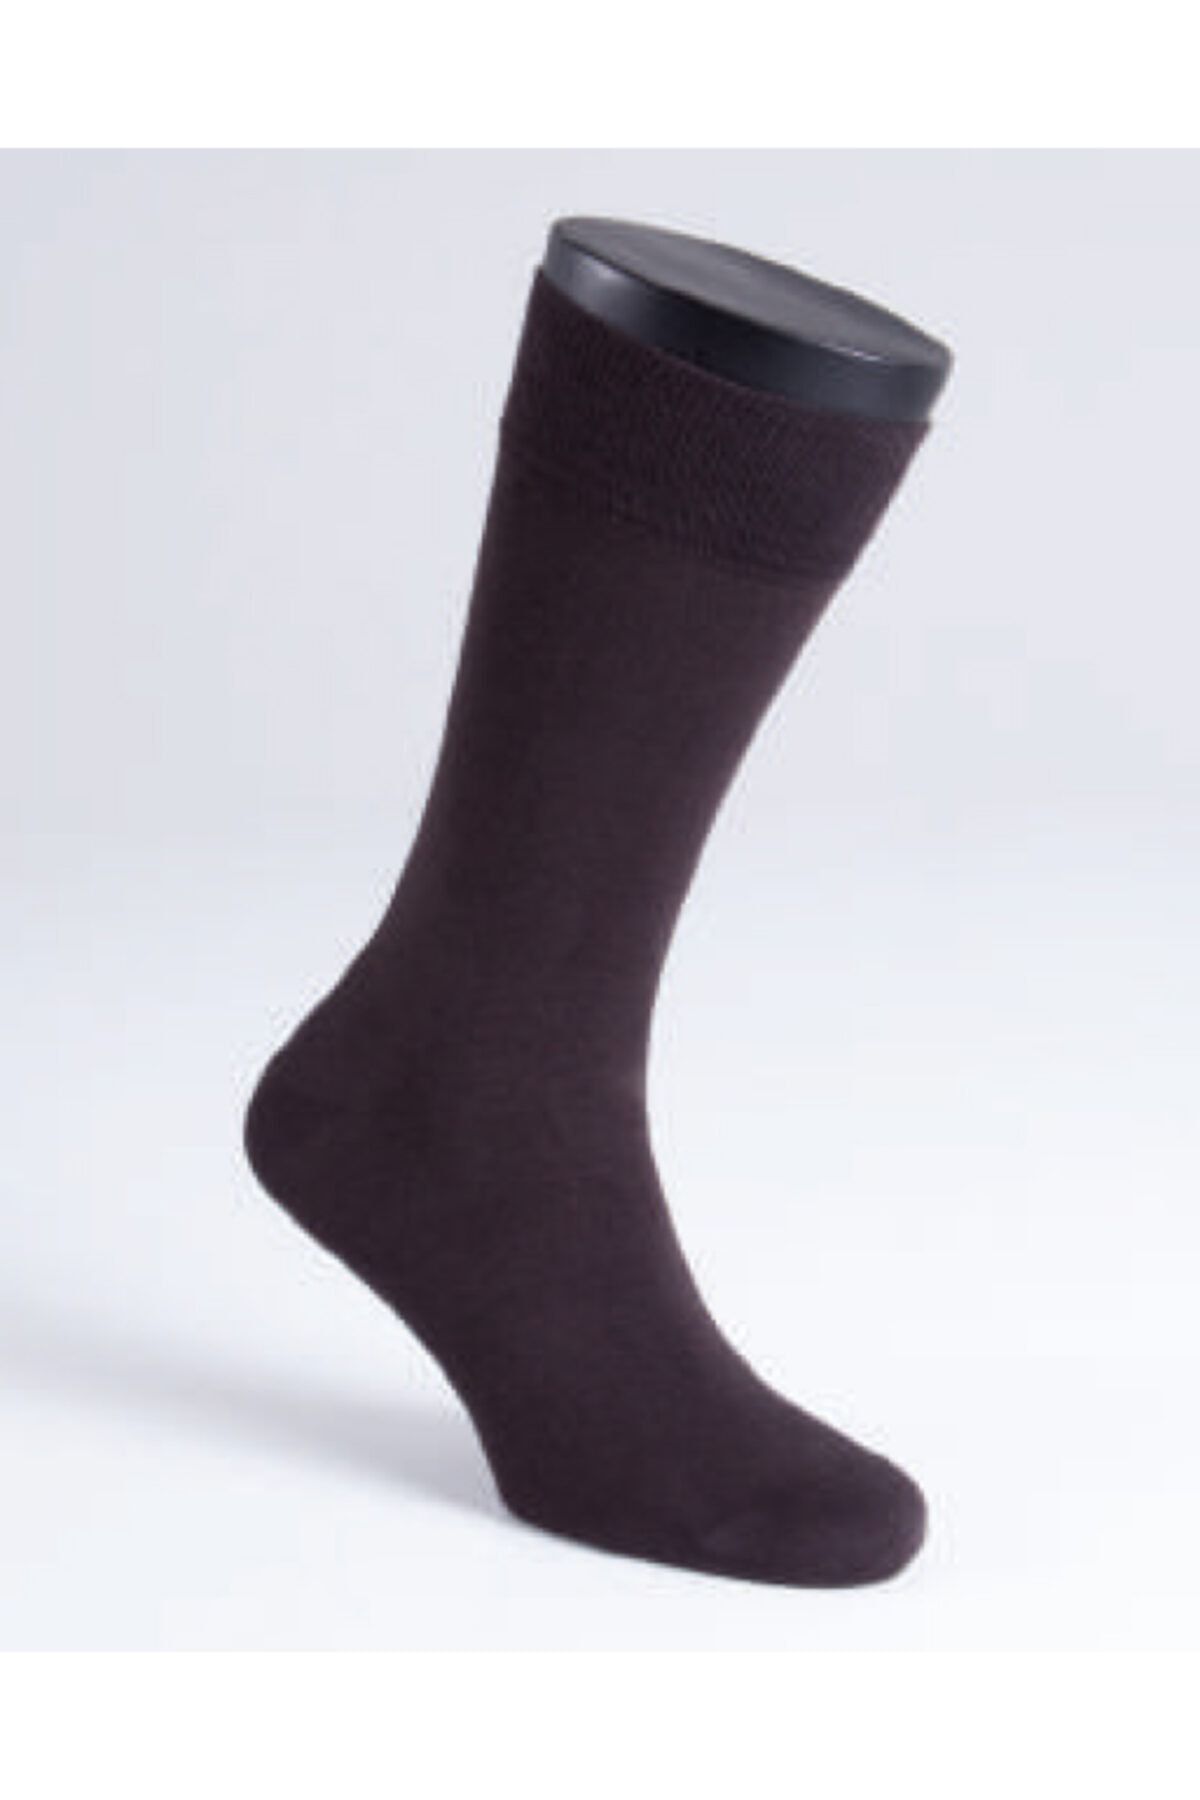 Blackspade Erkek Çorap 9903 - Kahverengi